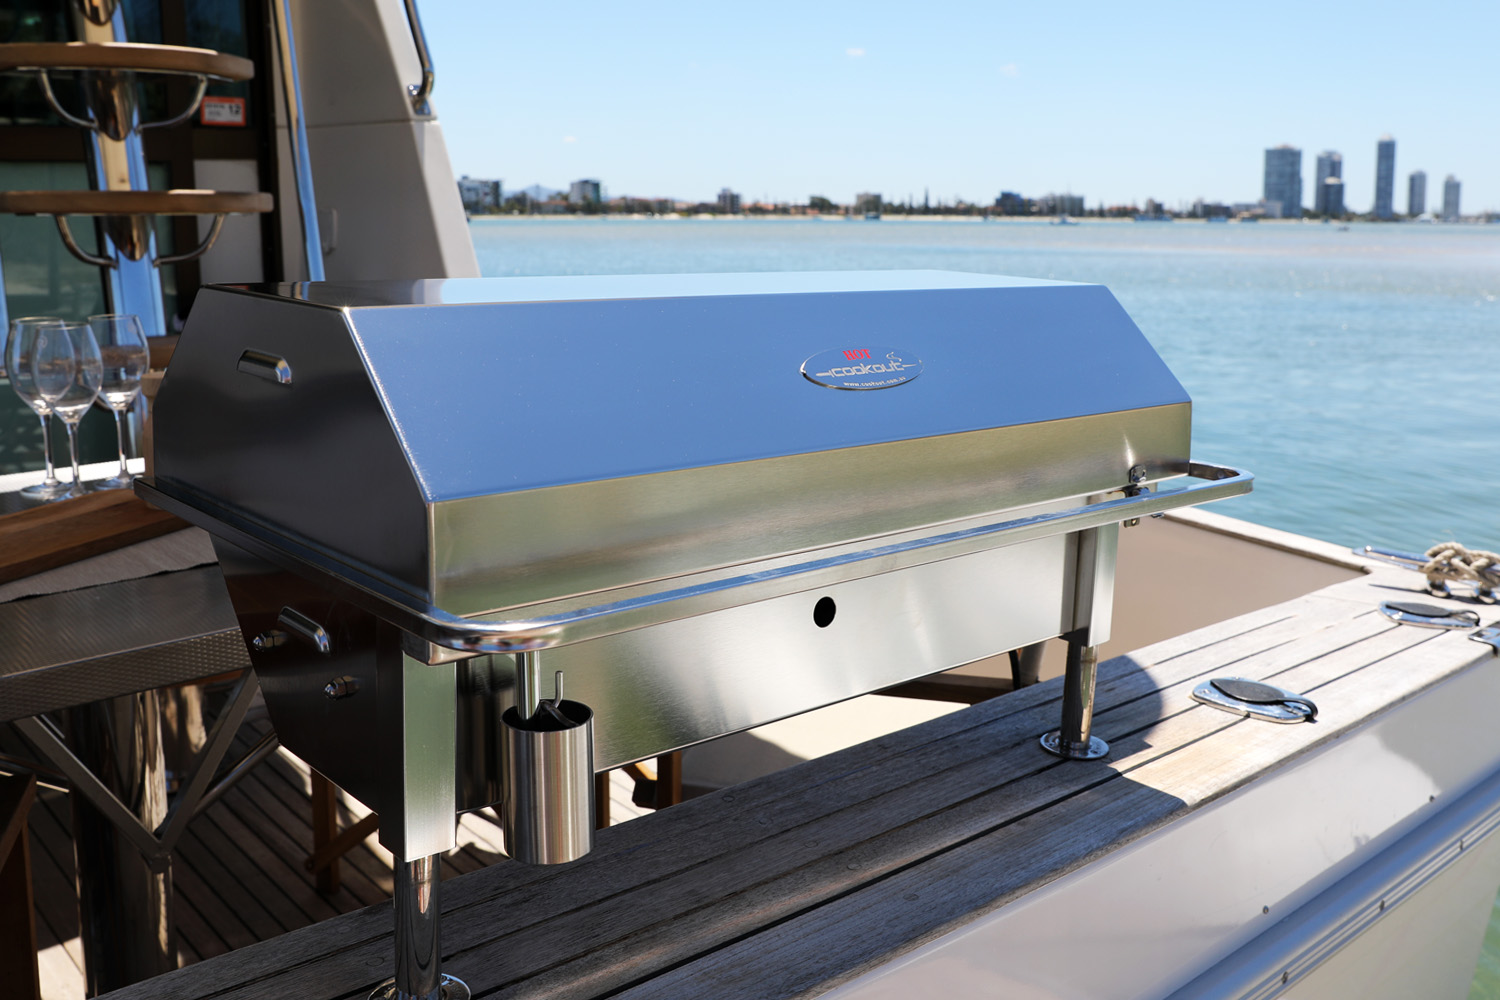 Portable electric boat BBQ Australia